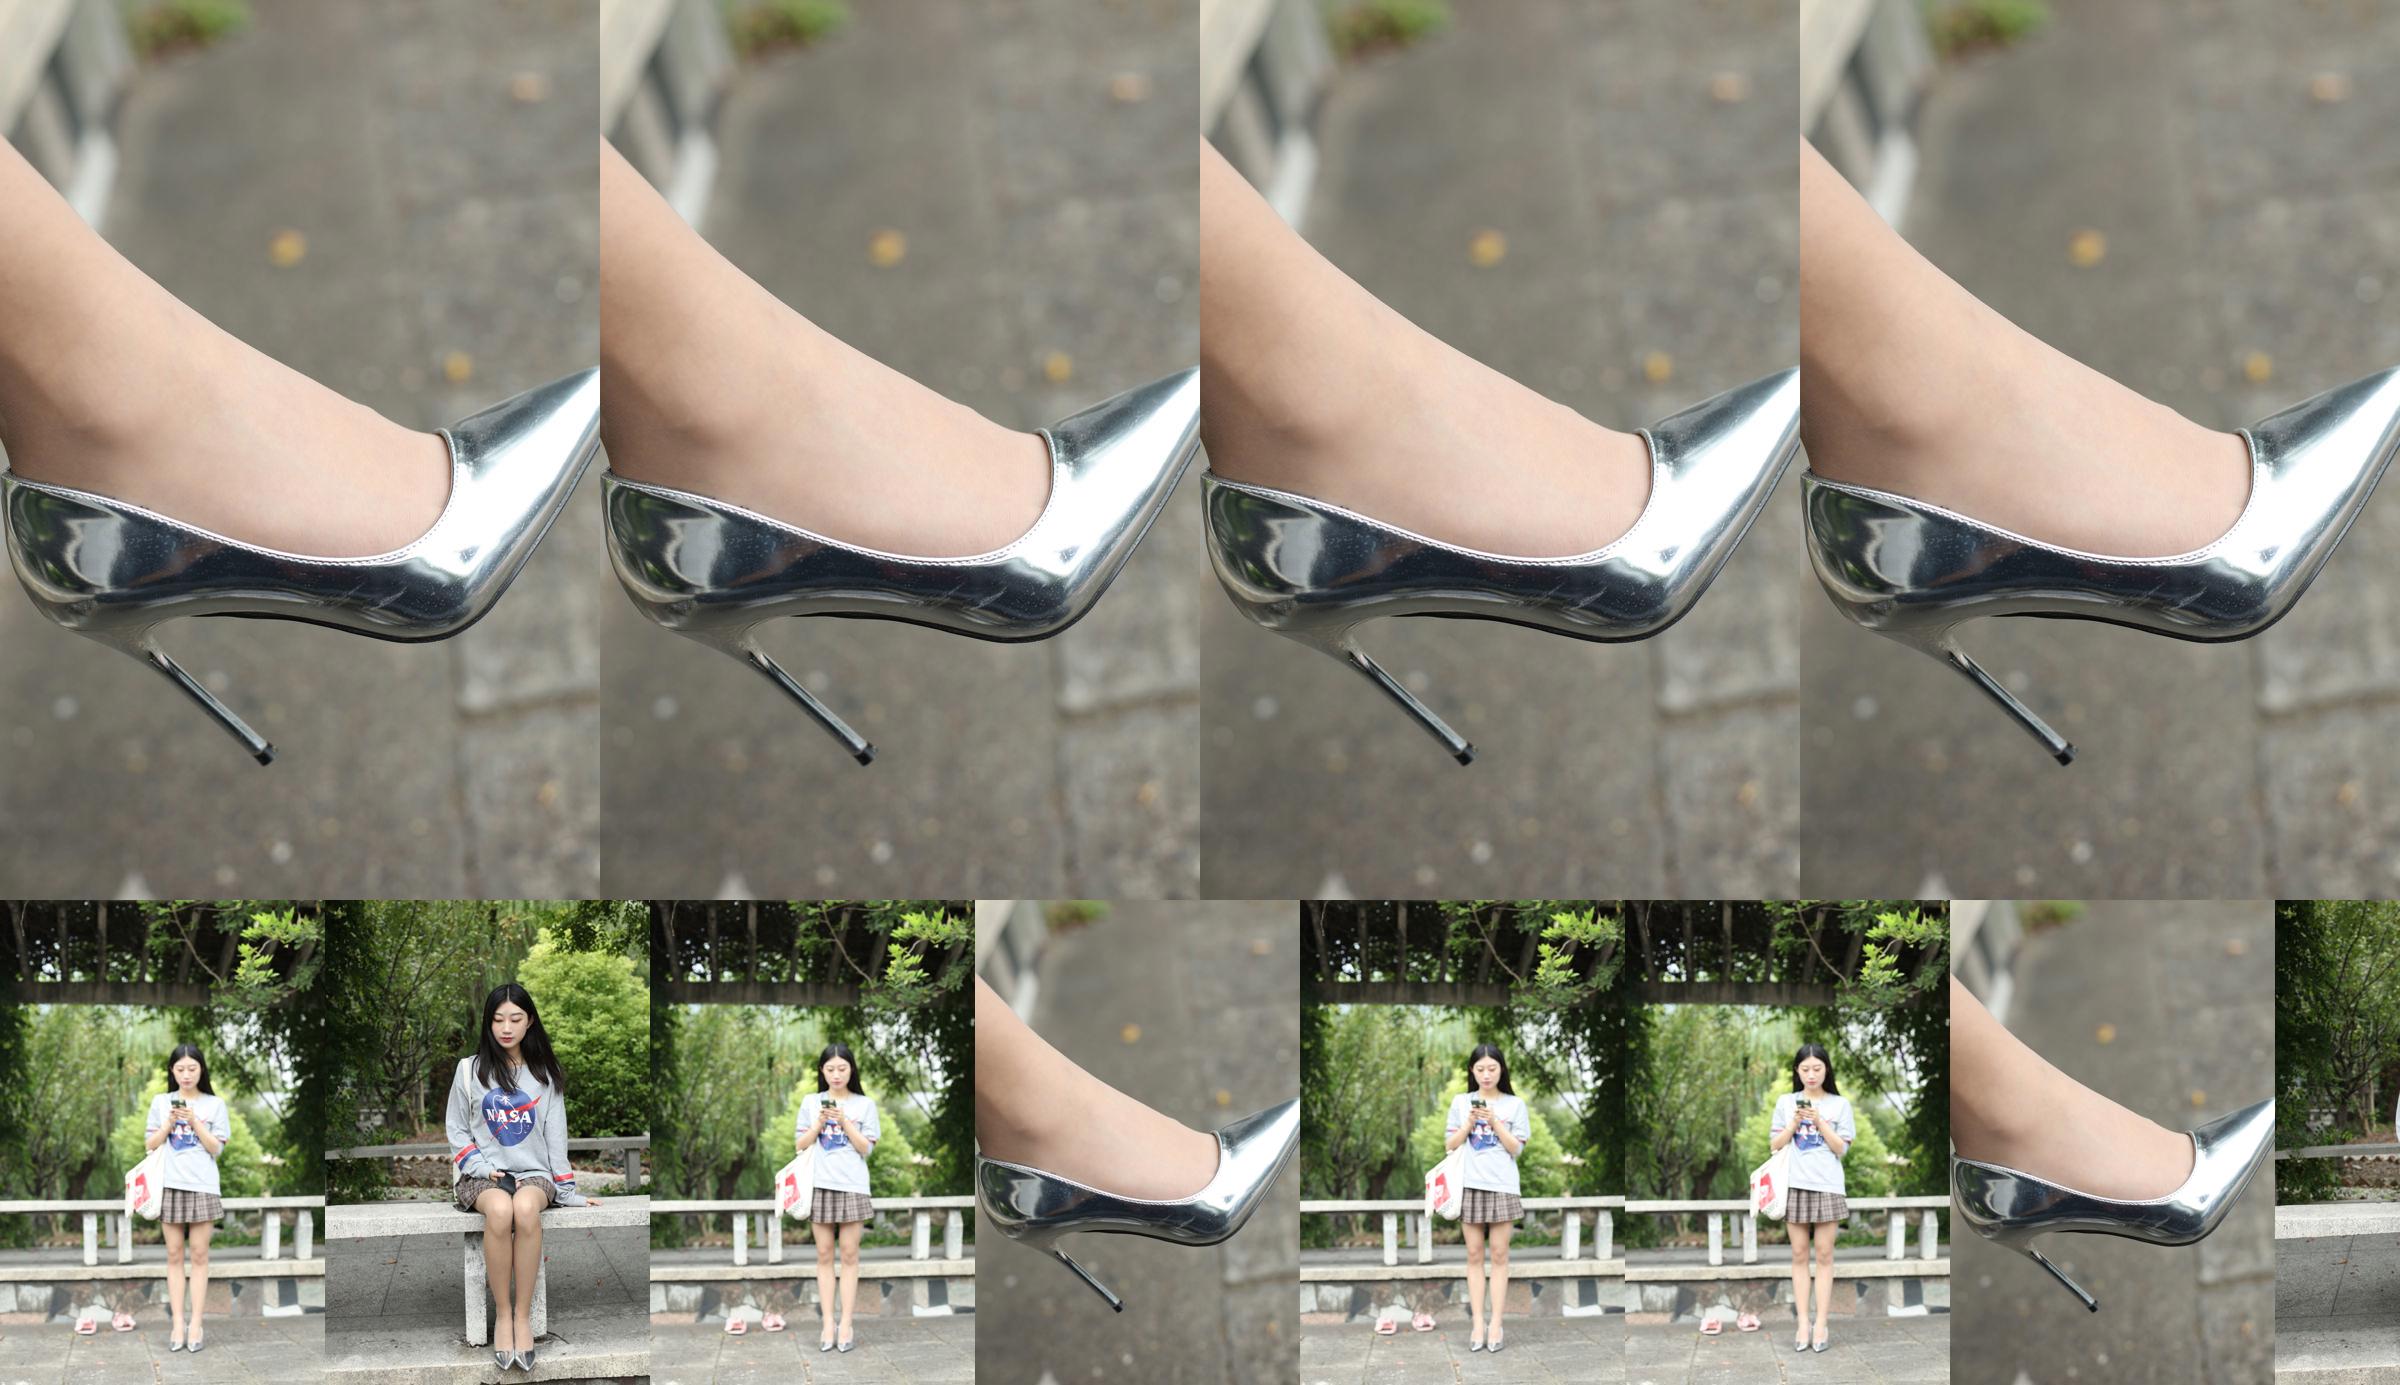 [Naisi] NO.147 Yi Ning, the soft girl on the long-legged stone bench No.bebb02 Page 1